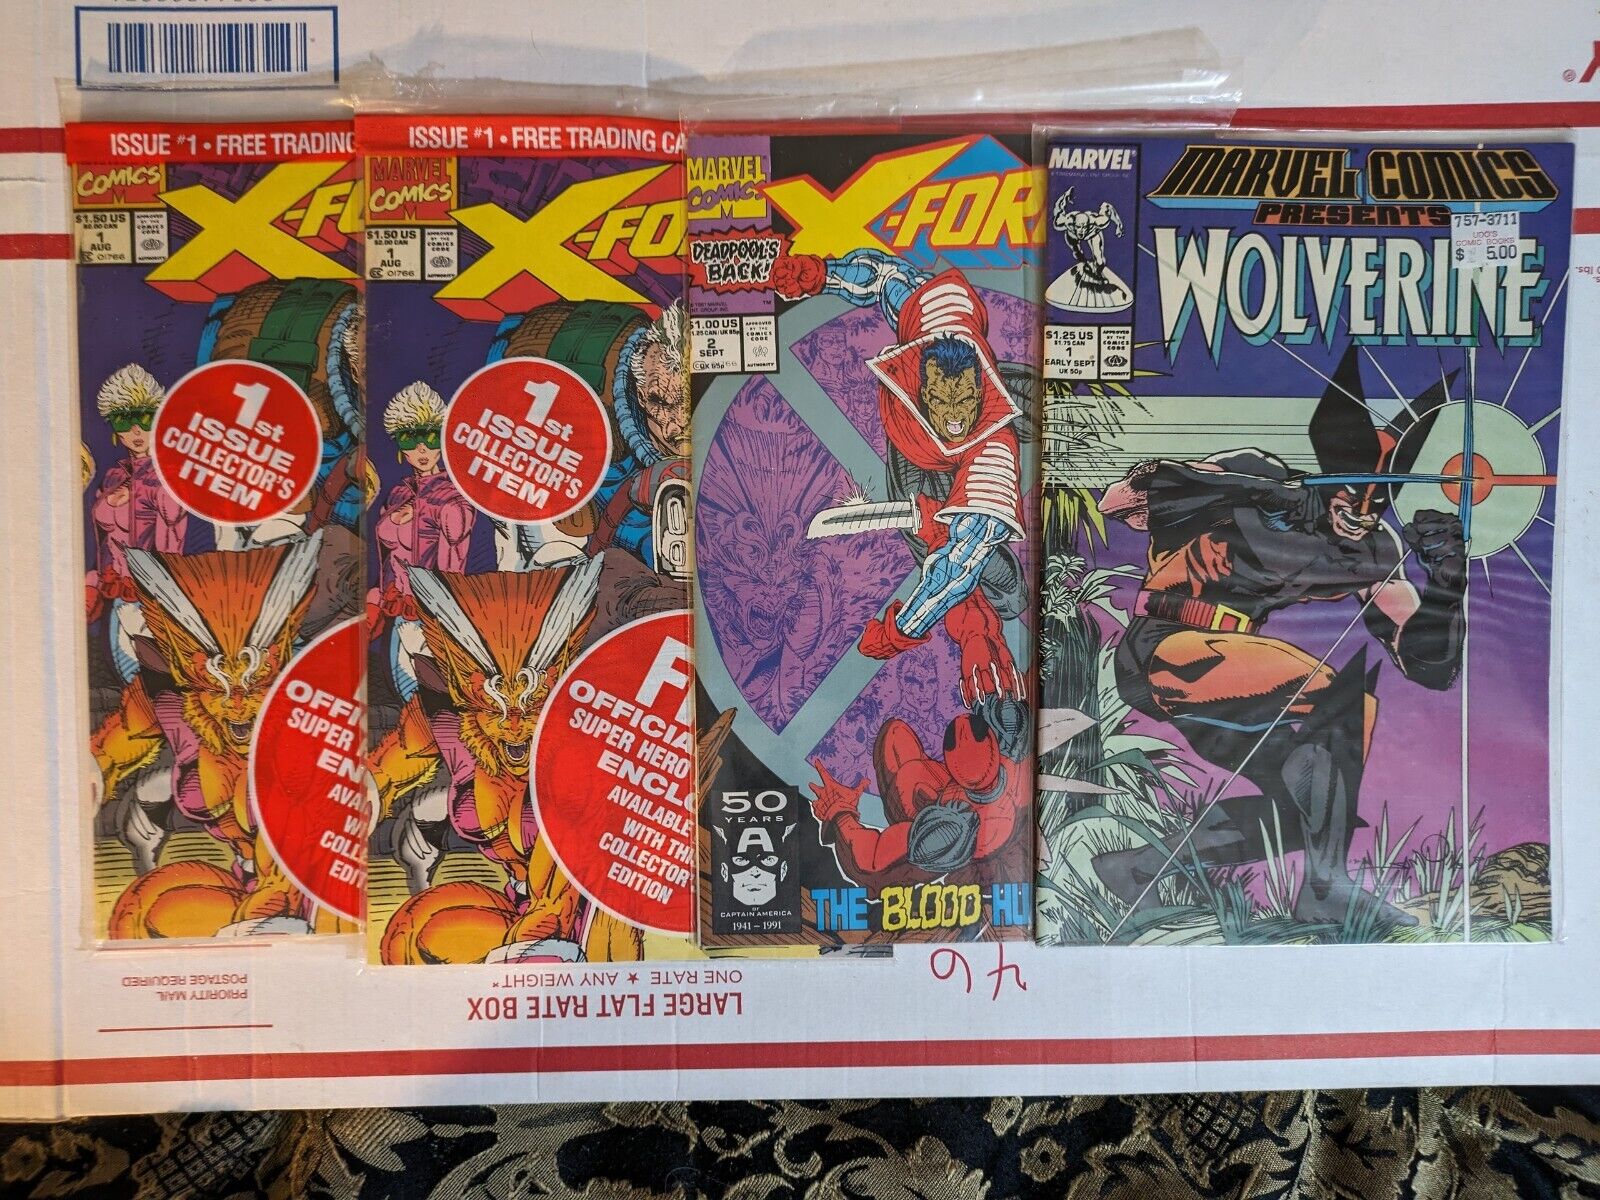 X-Force #1 (x2), #2, Marvel Comics Presents #1